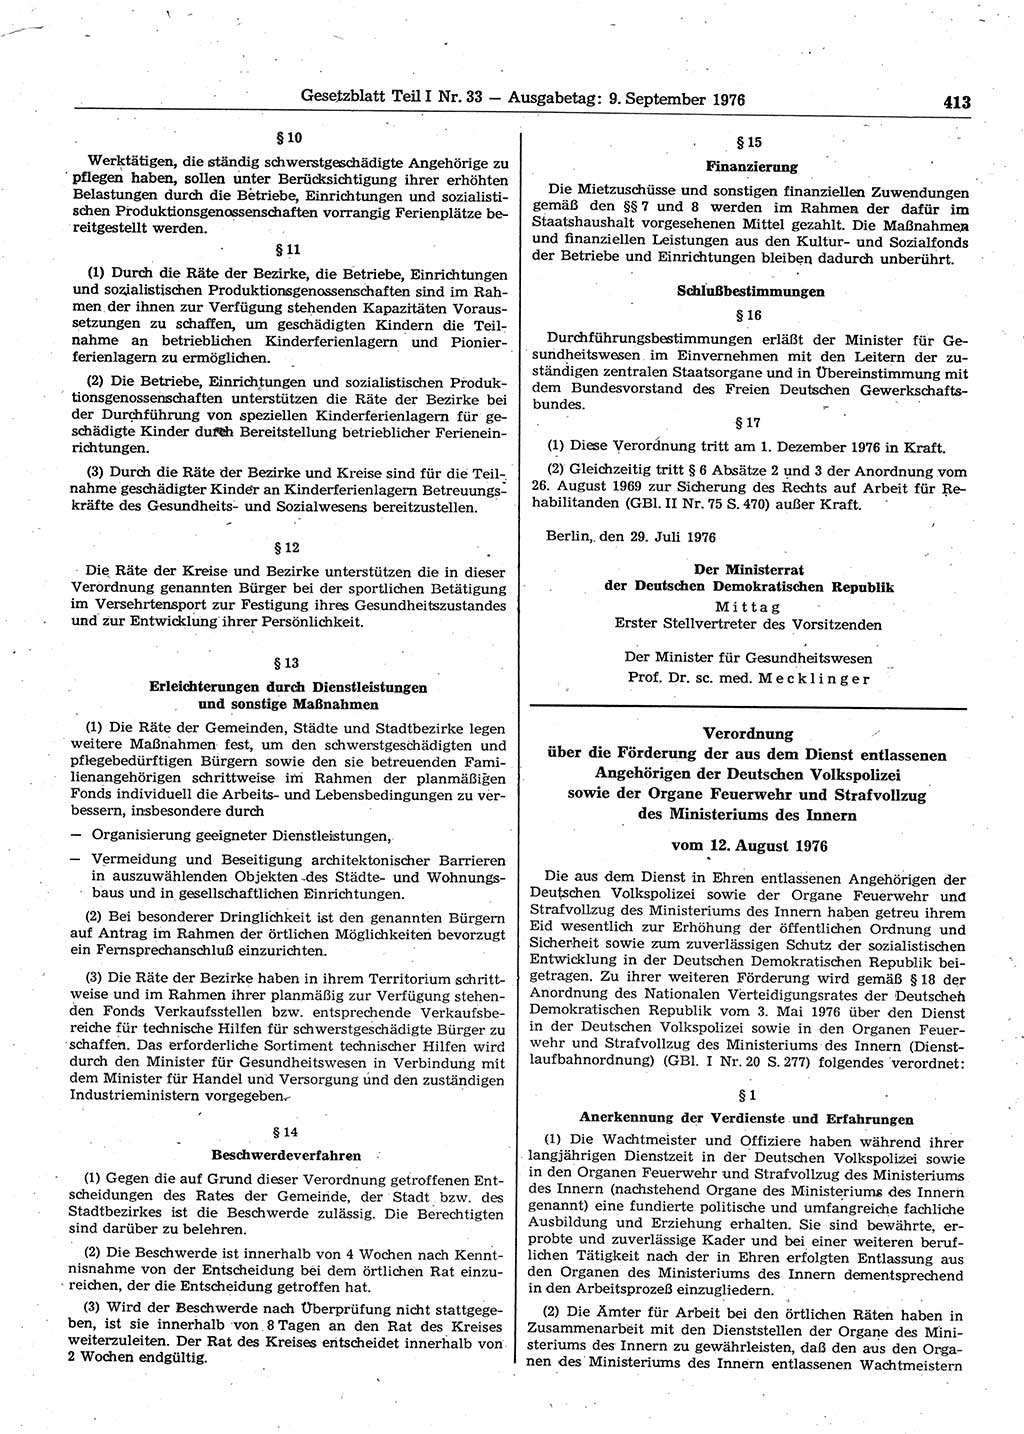 Gesetzblatt (GBl.) der Deutschen Demokratischen Republik (DDR) Teil Ⅰ 1976, Seite 413 (GBl. DDR Ⅰ 1976, S. 413)